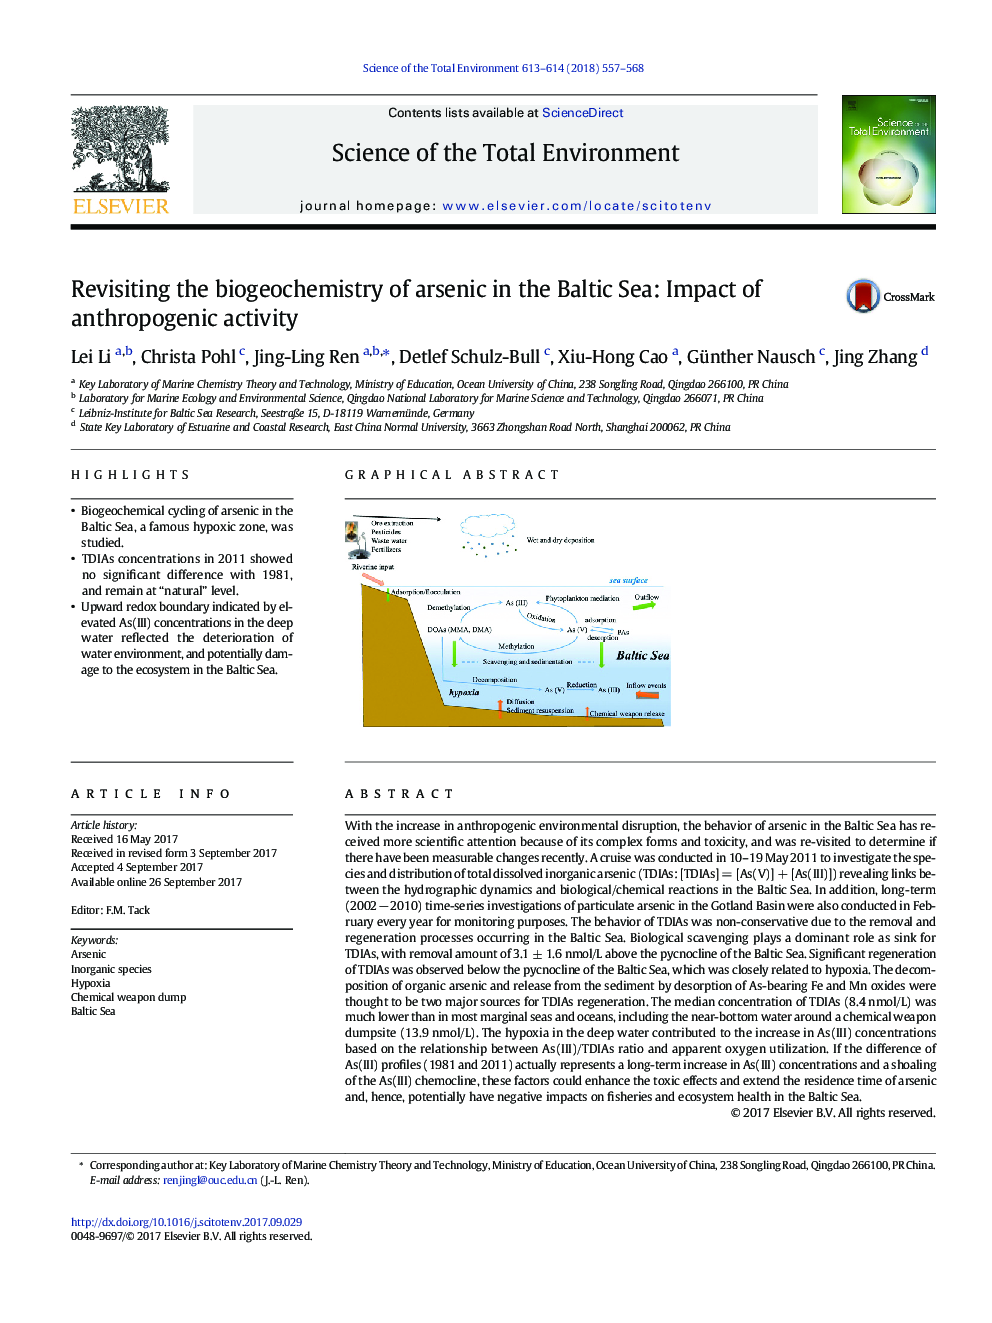 بازبینی بیوگرافی شیمی آرسنیک در دریای بالتیک: تاثیر فعالیت های انسان شناسی